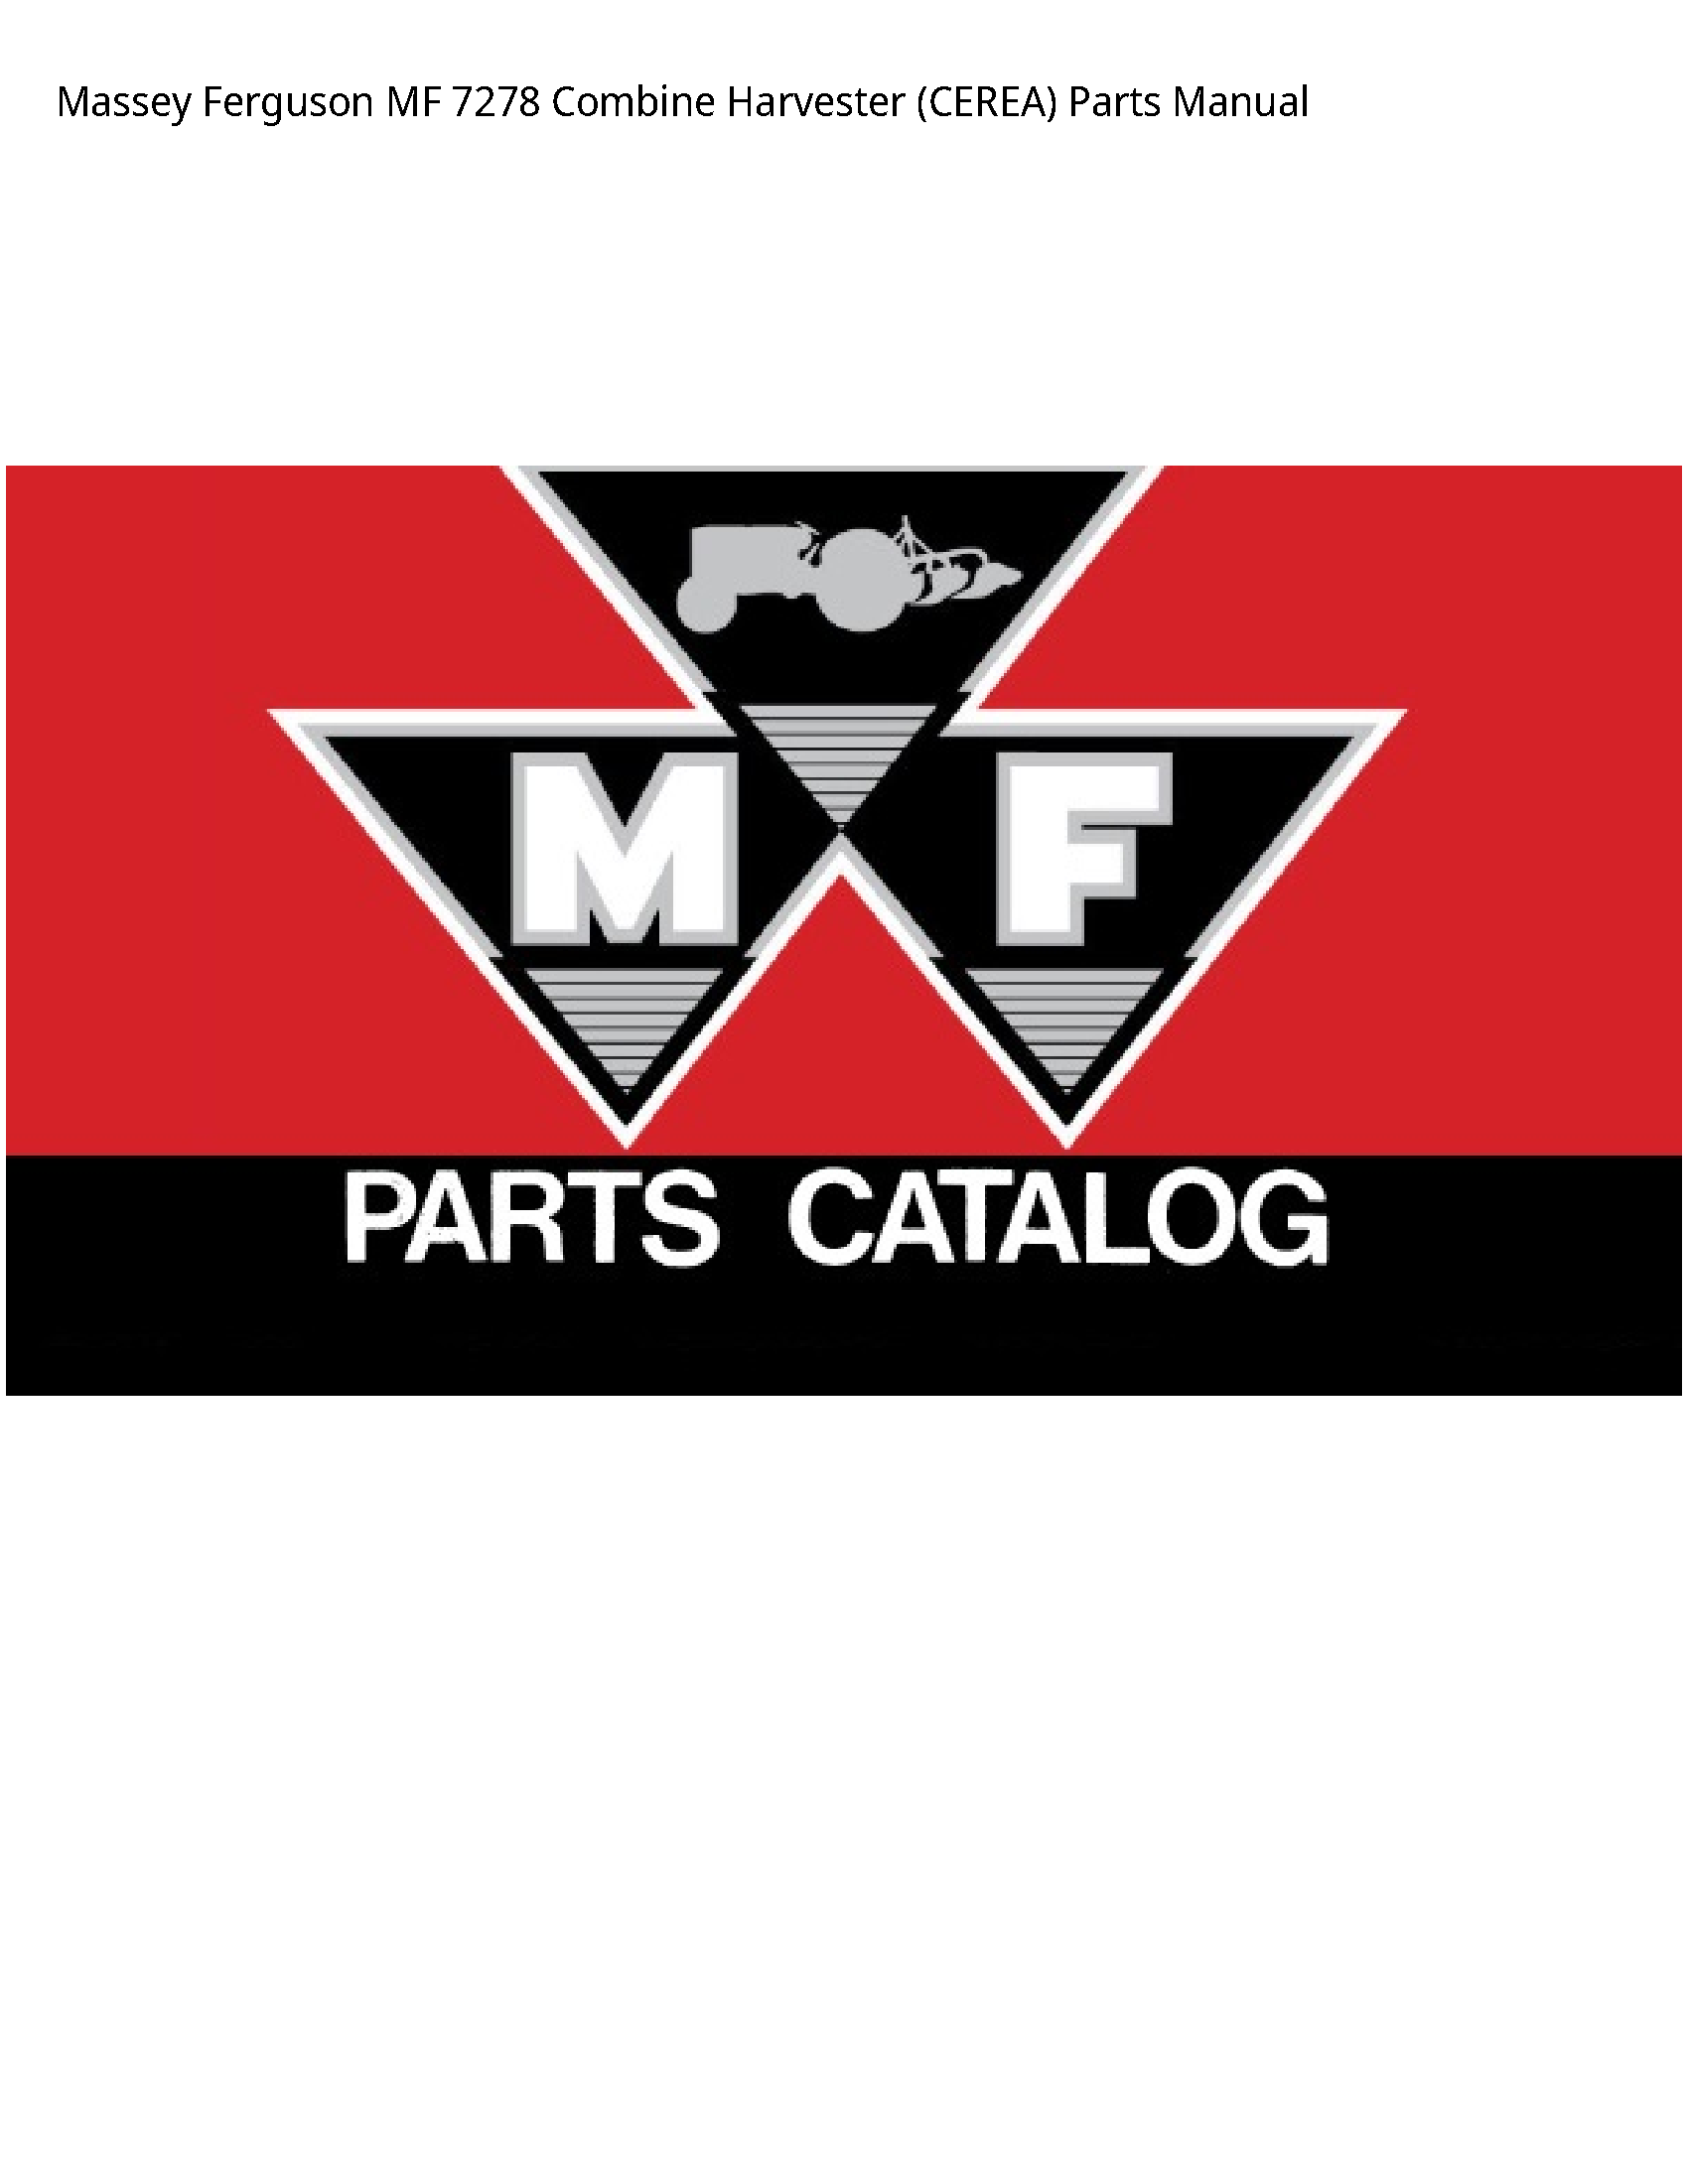 Massey Ferguson 7278 MF Combine Harvester (CEREA) Parts manual